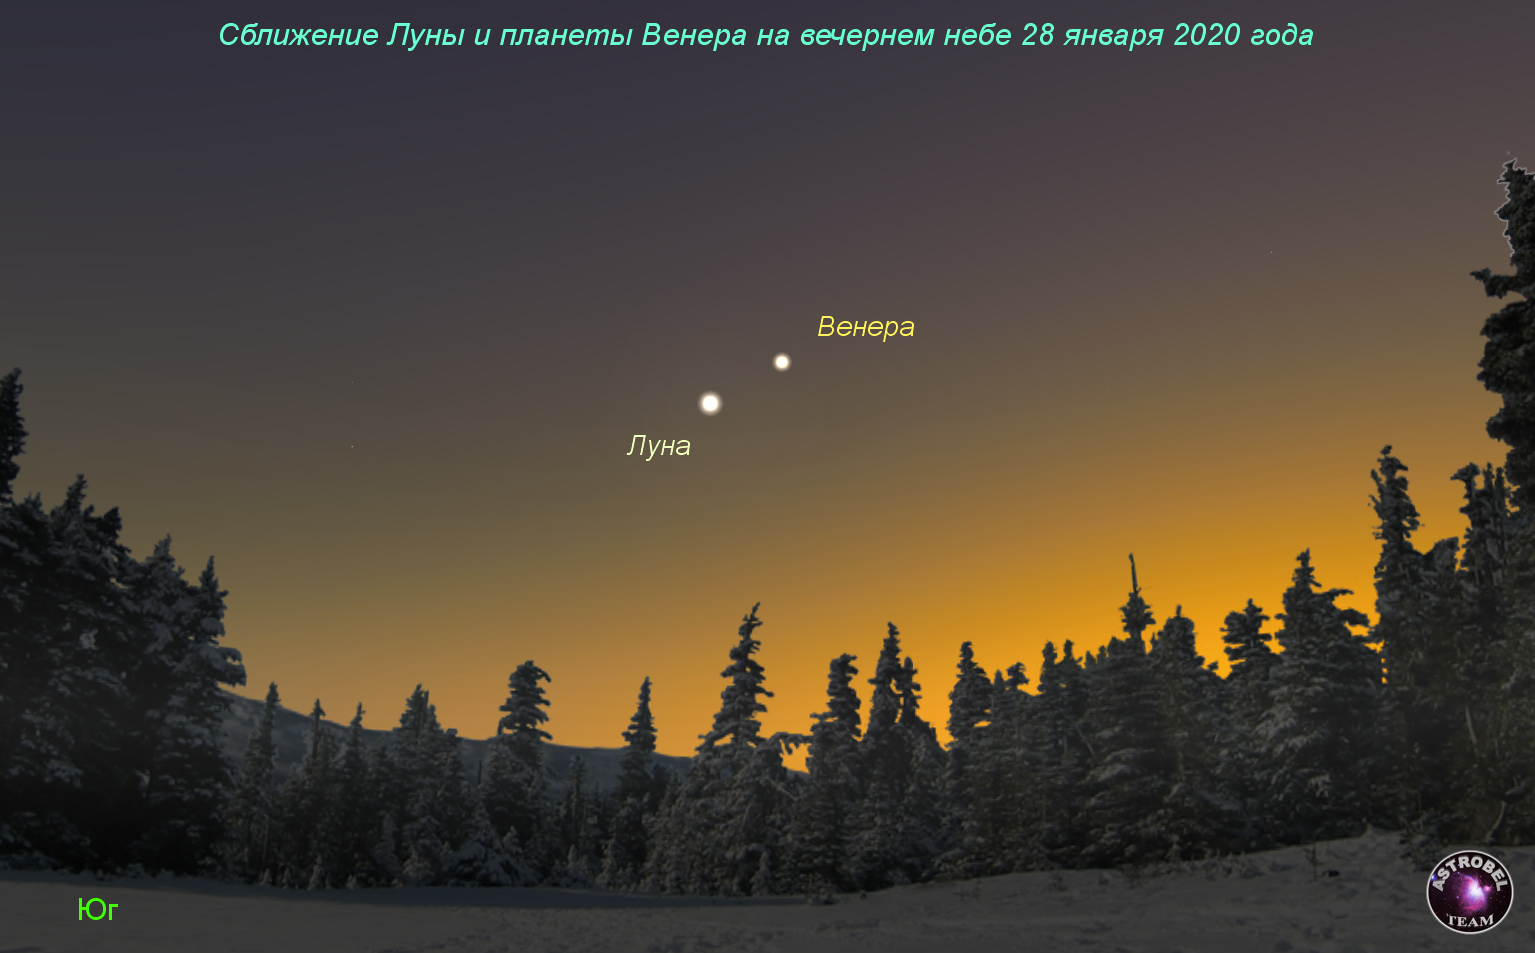 Сближение Луны и планеты Венера на вечернем небе 28 января